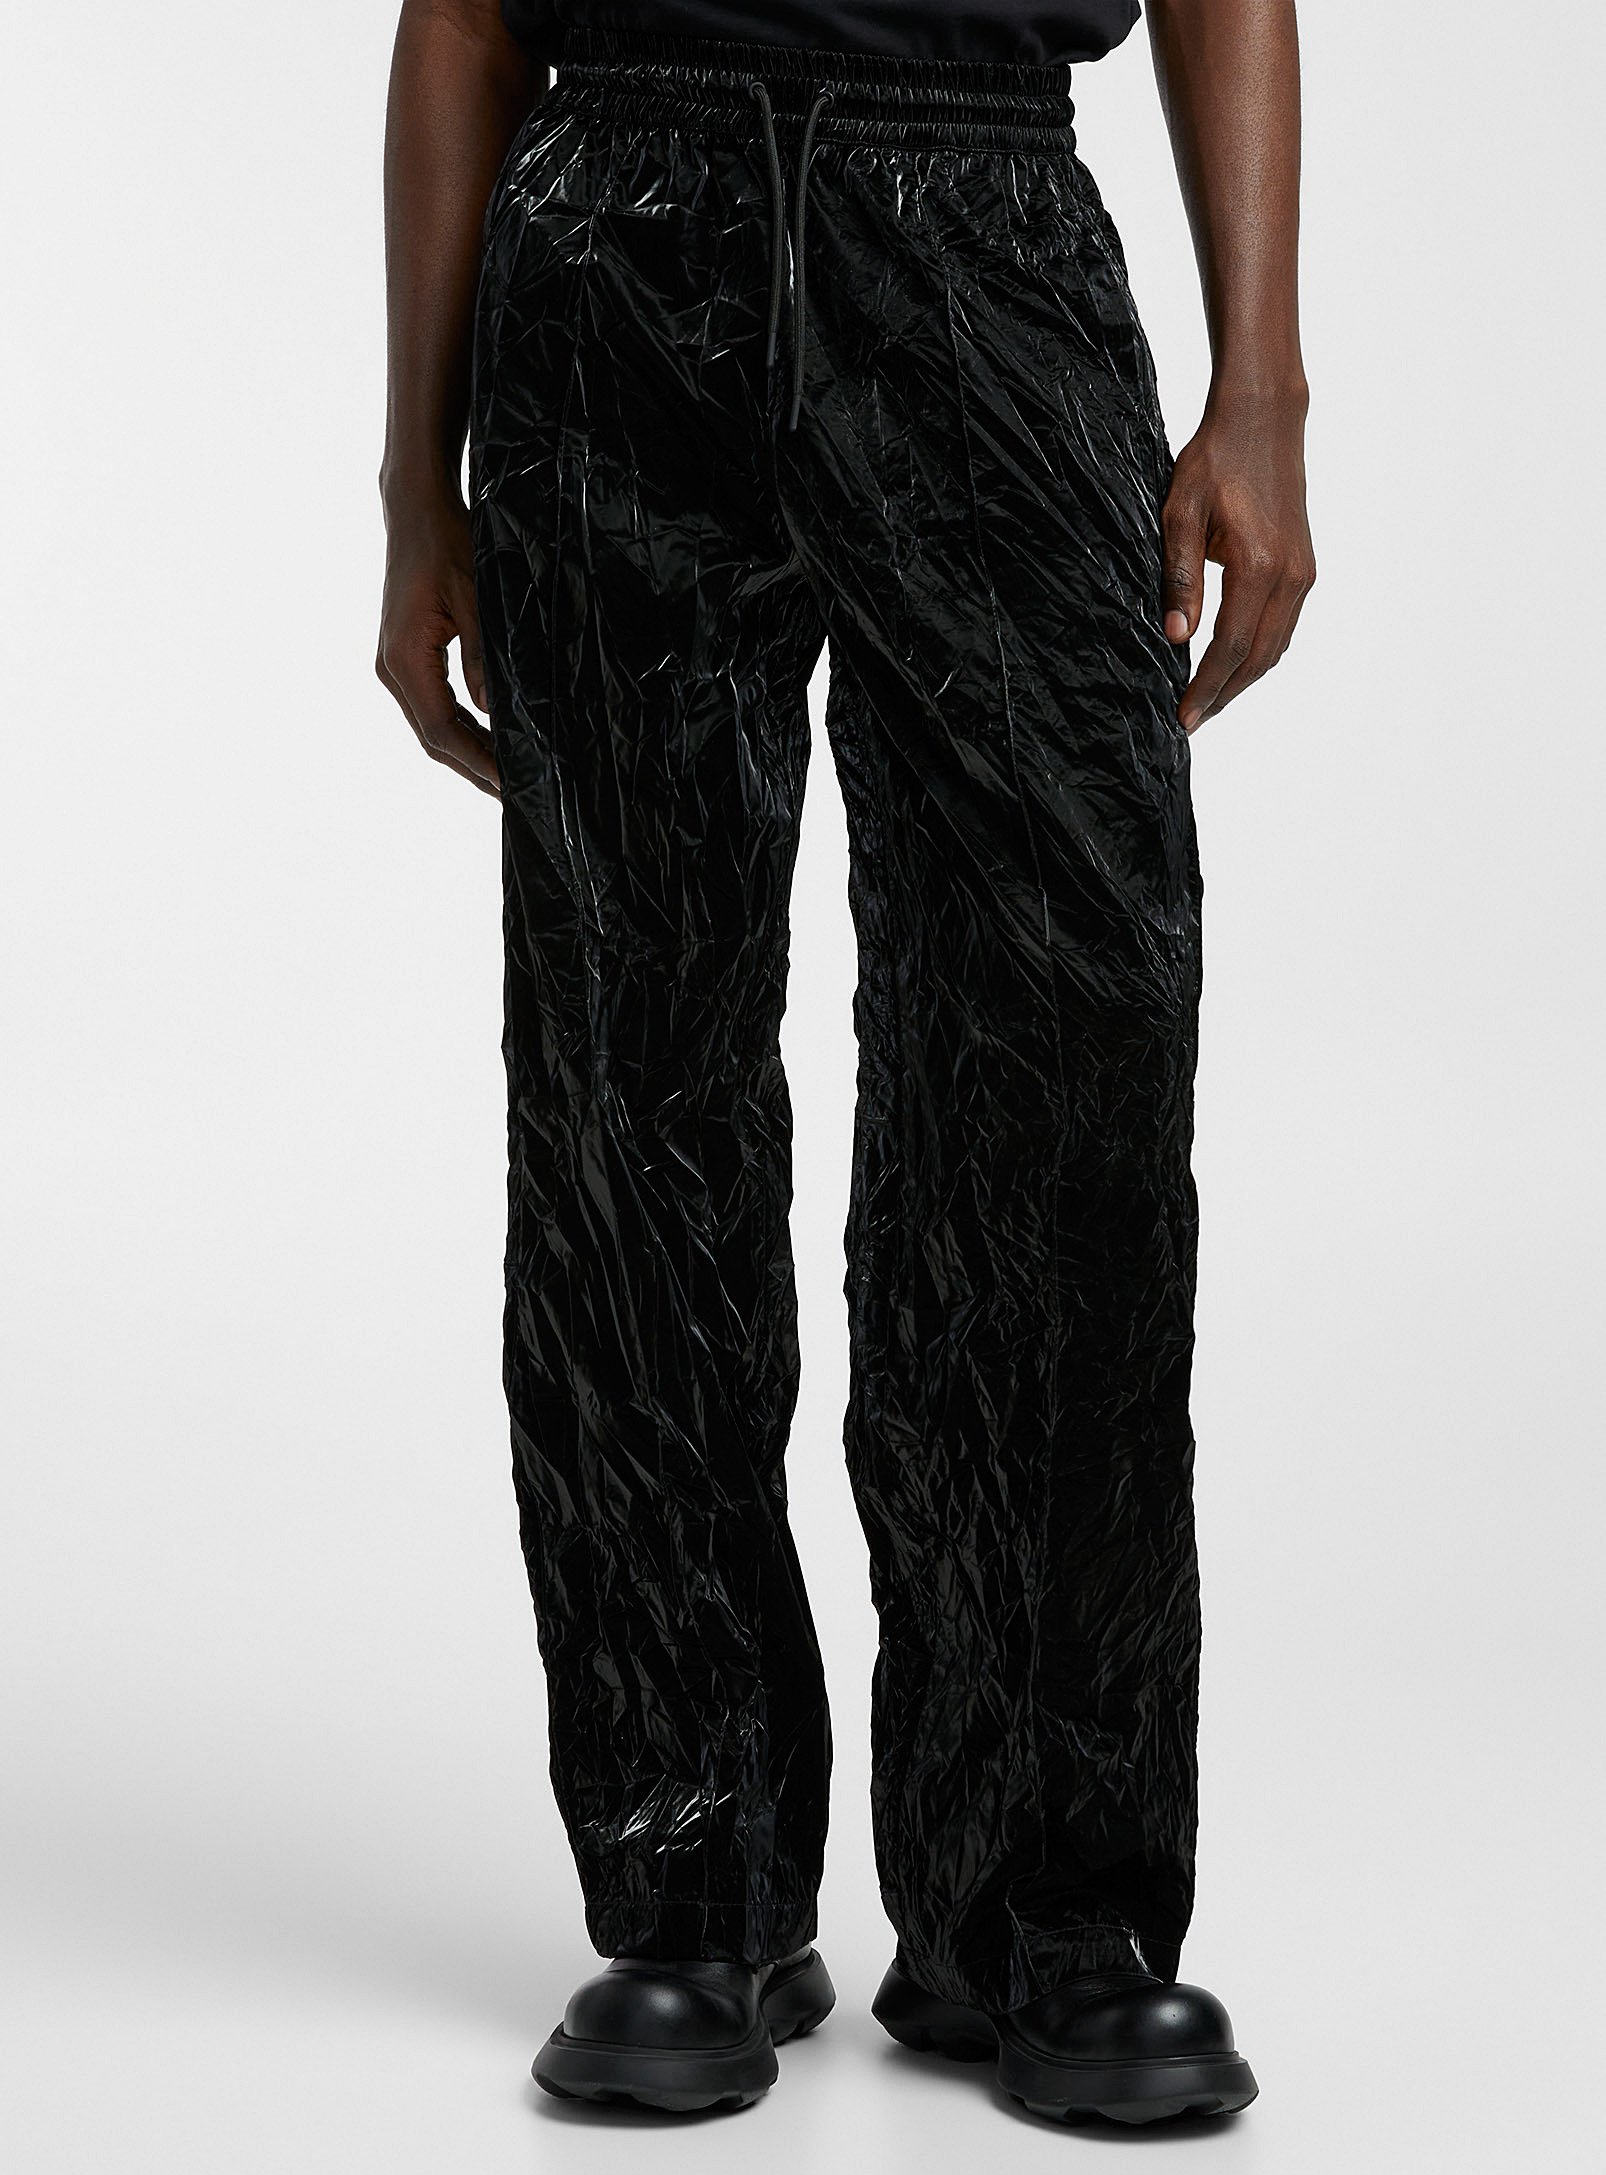 Han Kjøbenhavn - Le pantalon noir laqué texturé